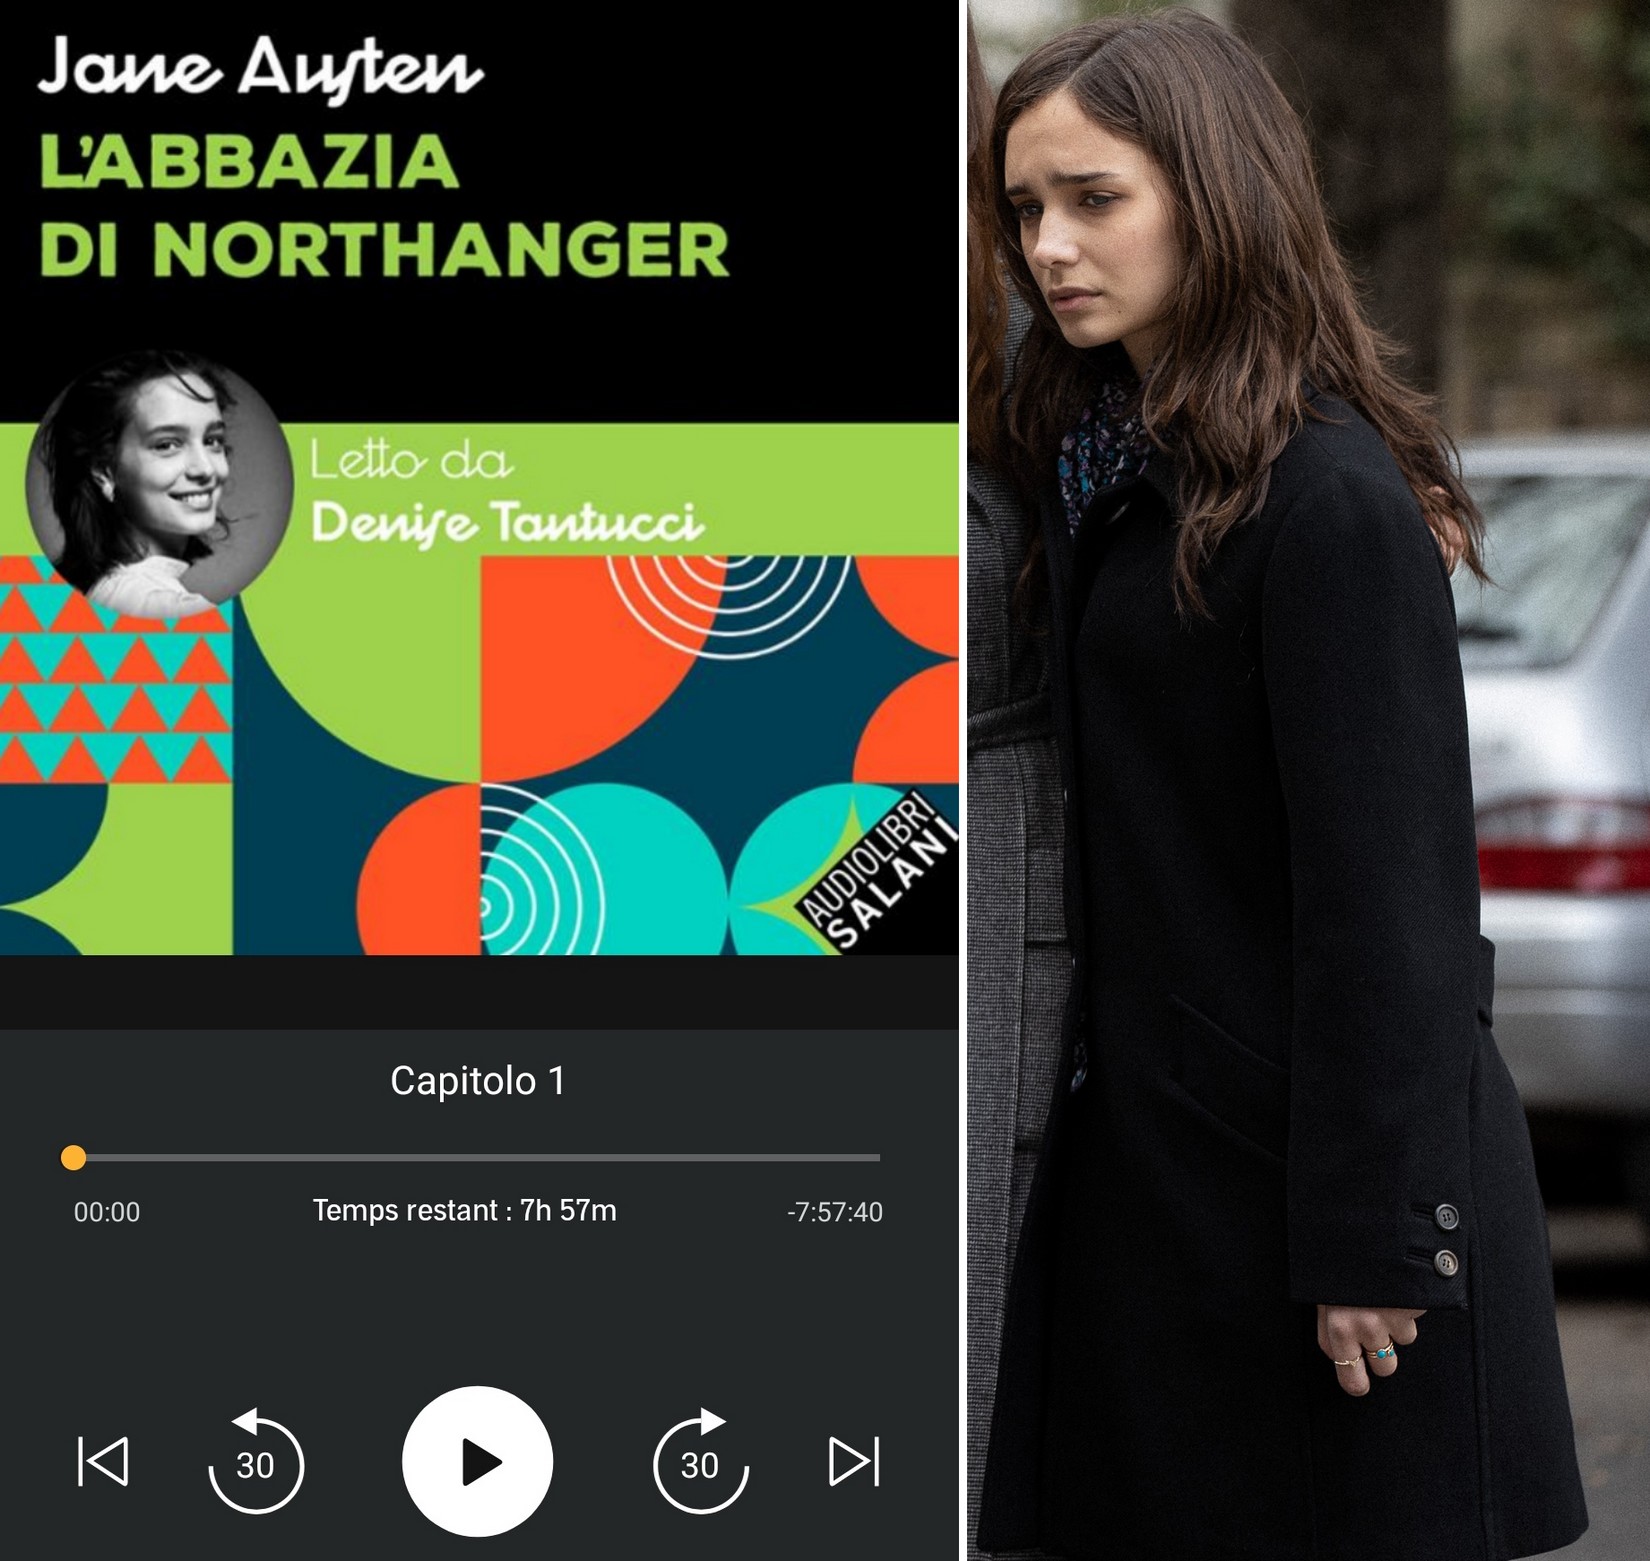 Audiobook / Livre audio : Jane Austen, L'abbazia di Northanger (Northanger Abbey). Lu en italien par Denise Tantucci